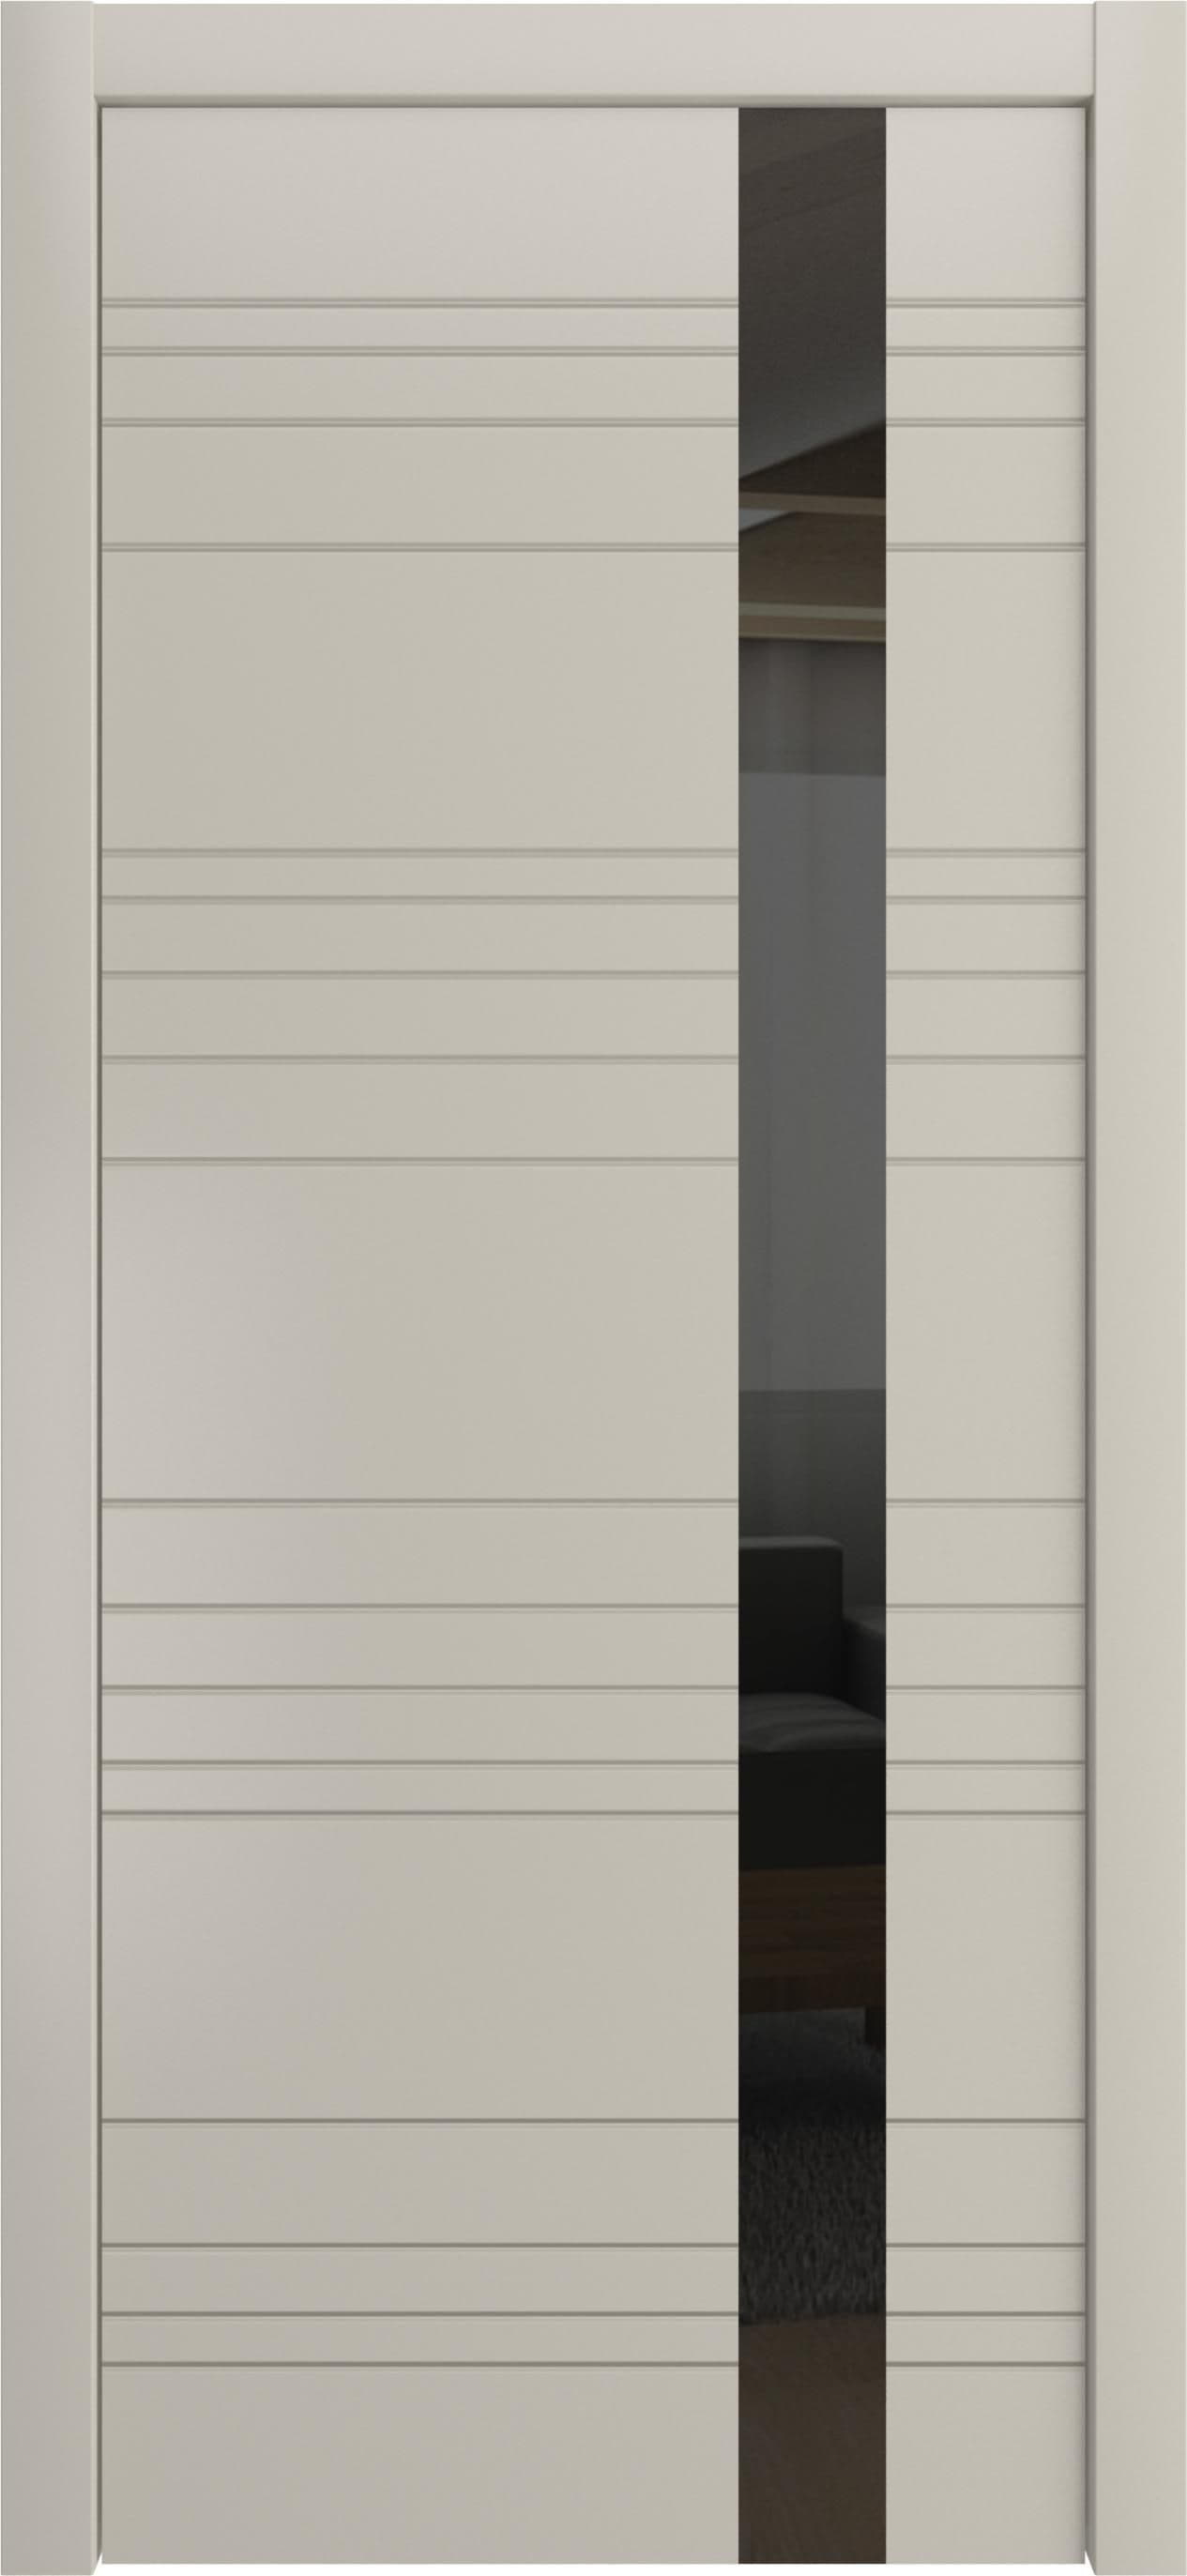 Межкомнатная дверь «Корсо» Лайн-Дор. Вид отделки Белая эмаль Остекление: Черный лак Cтандартный наличник